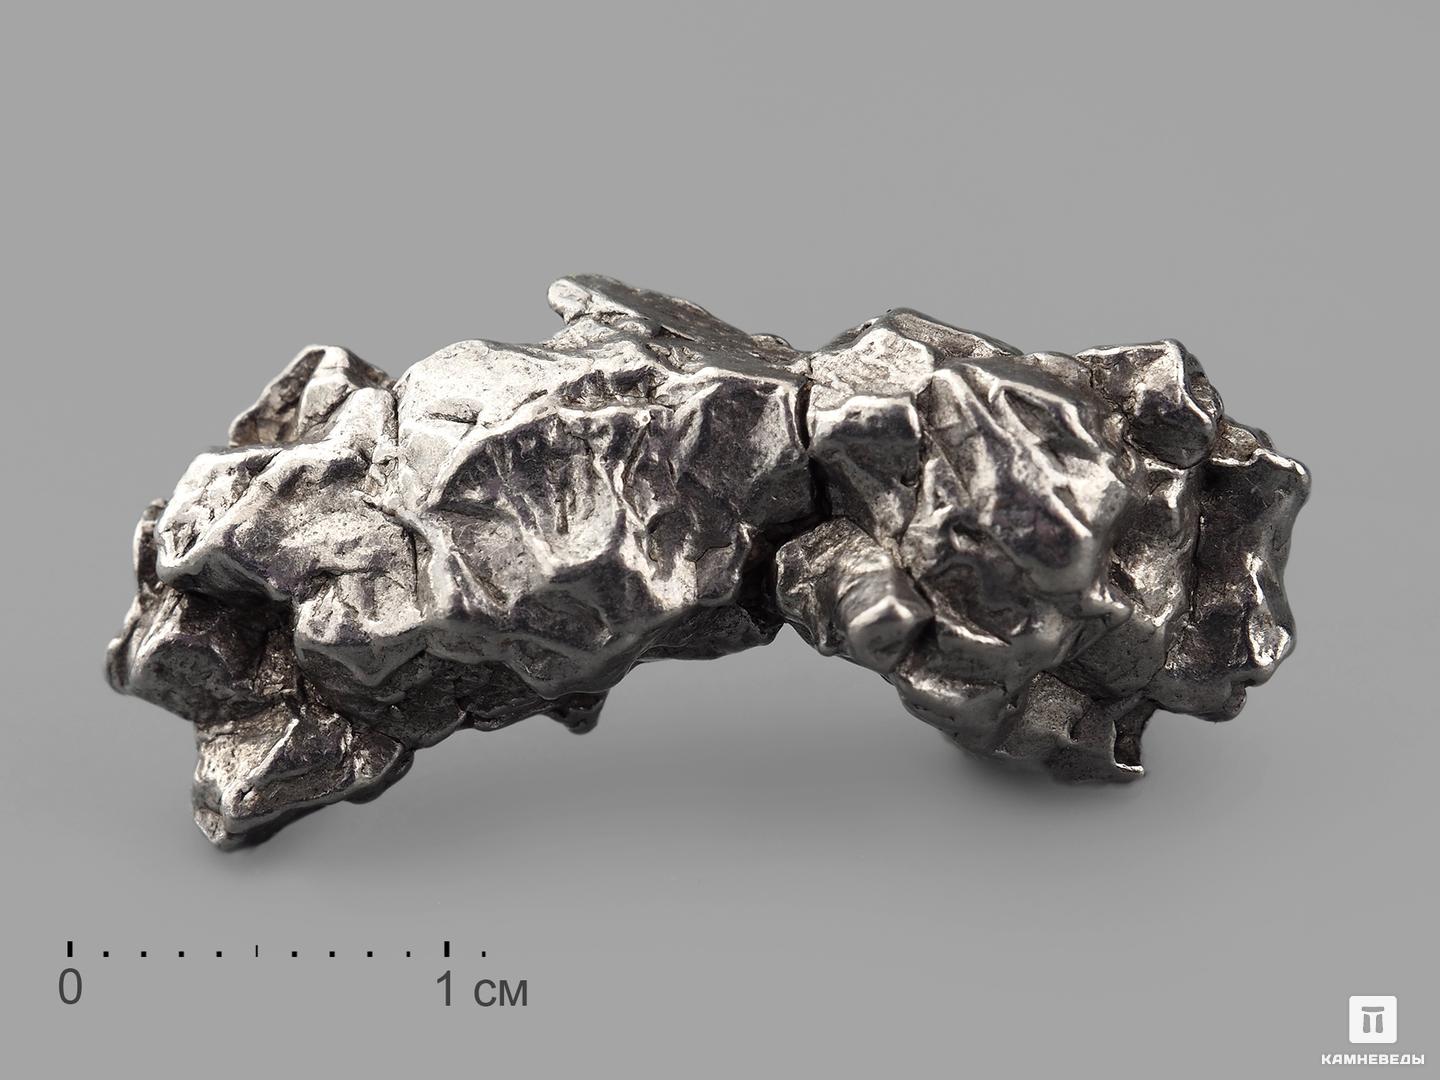 Метеорит Кампо-дель-Сьело, осколок 2,5-3 см (10-12 г) метеорит кампо дель сьело 6х4 3х1 6 см